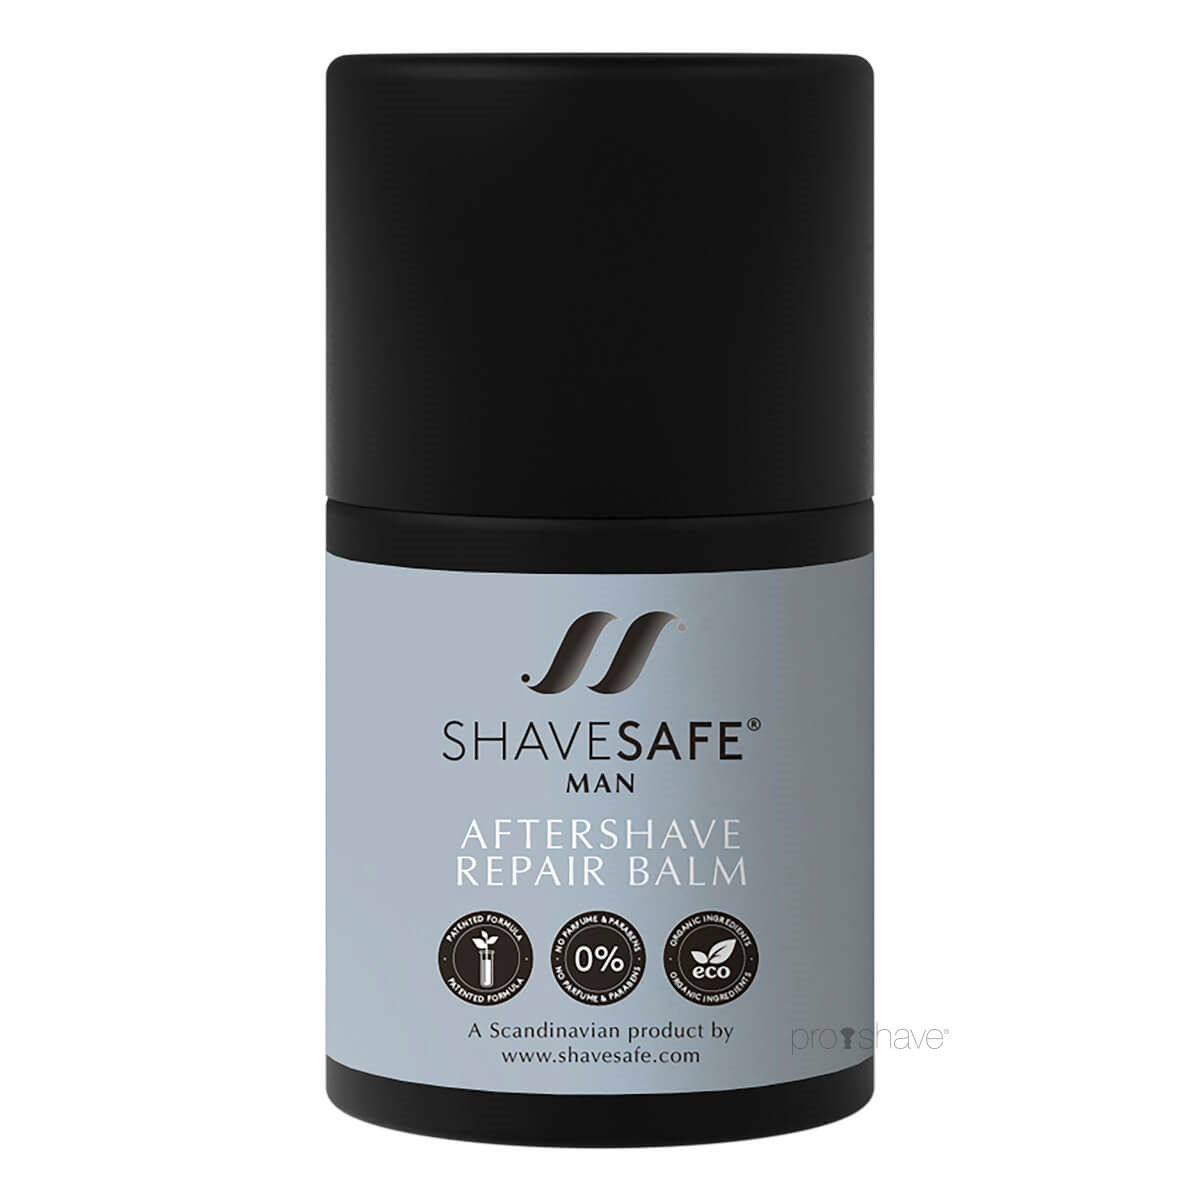 Billede af ShaveSafe Aftershave Repair Balm, Man, 50 ml.